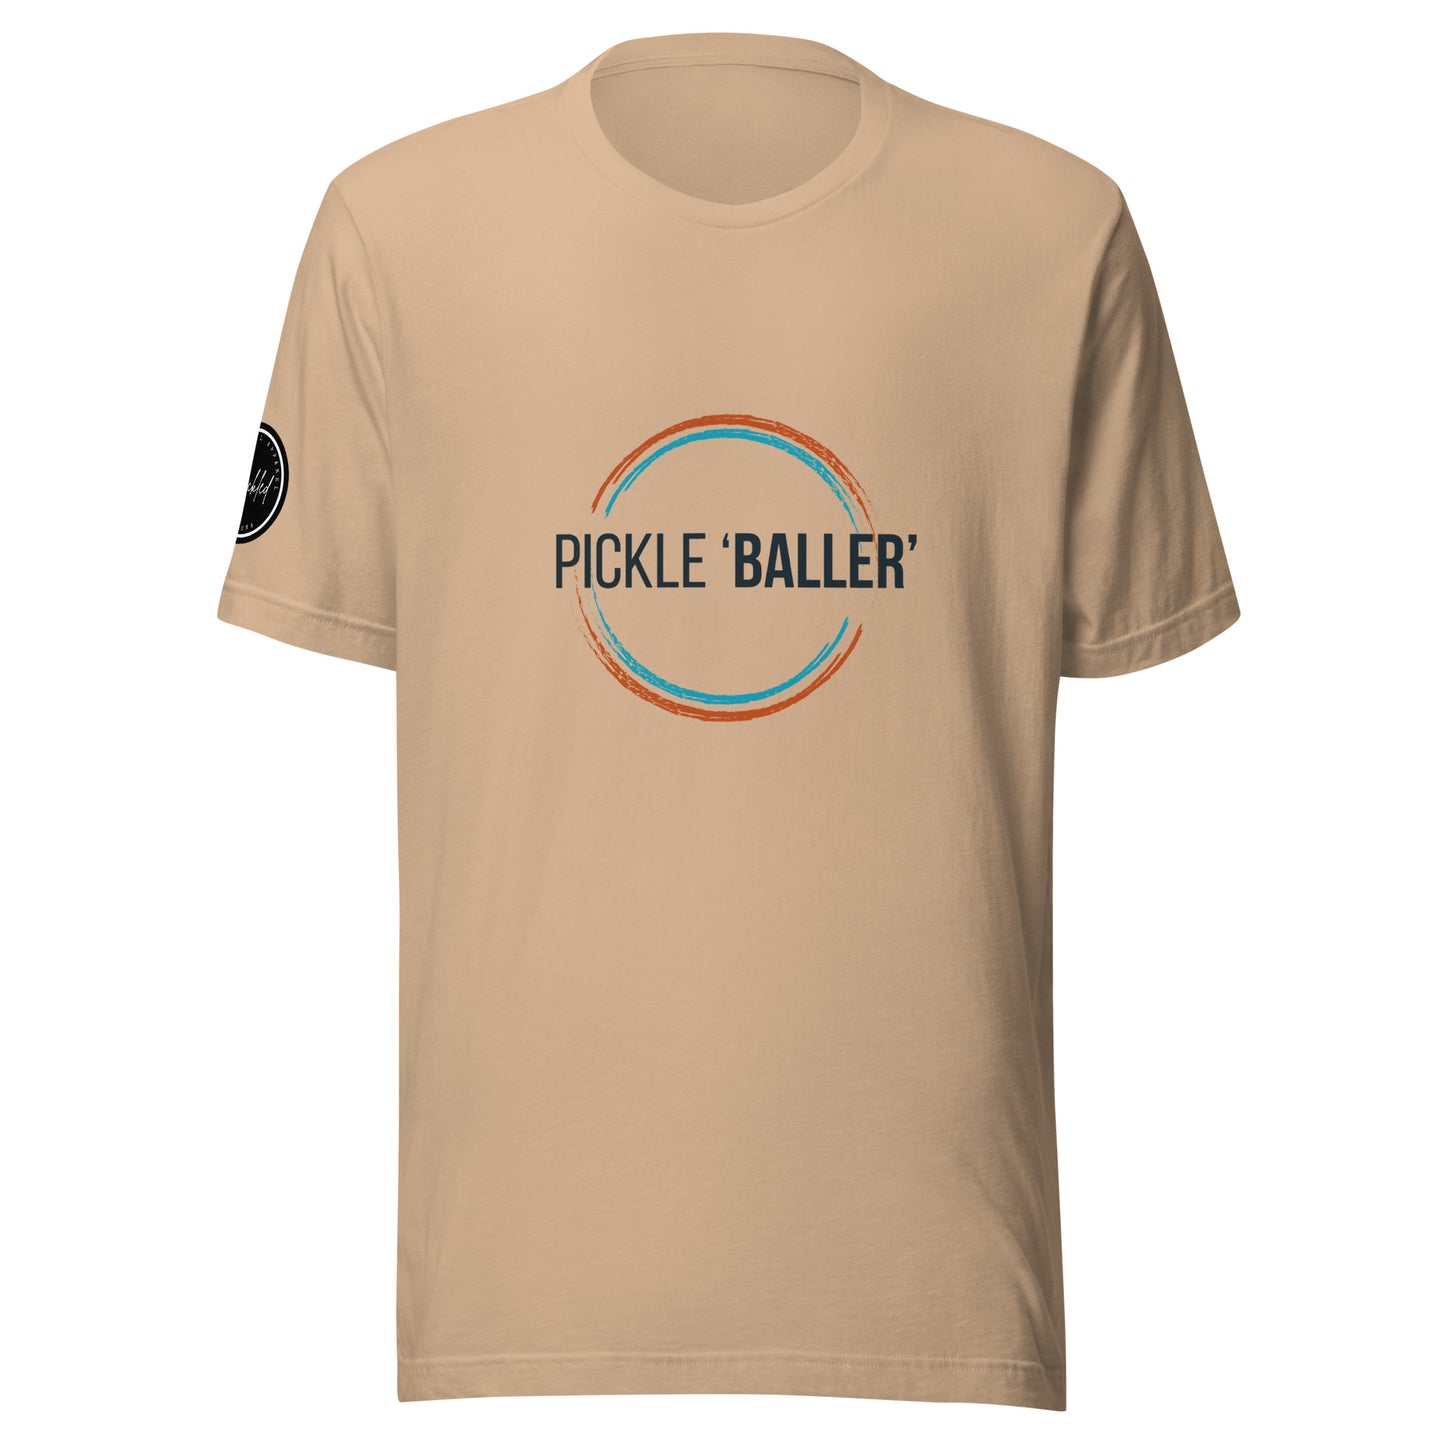 Pickle BALLER Unisex t-shirt